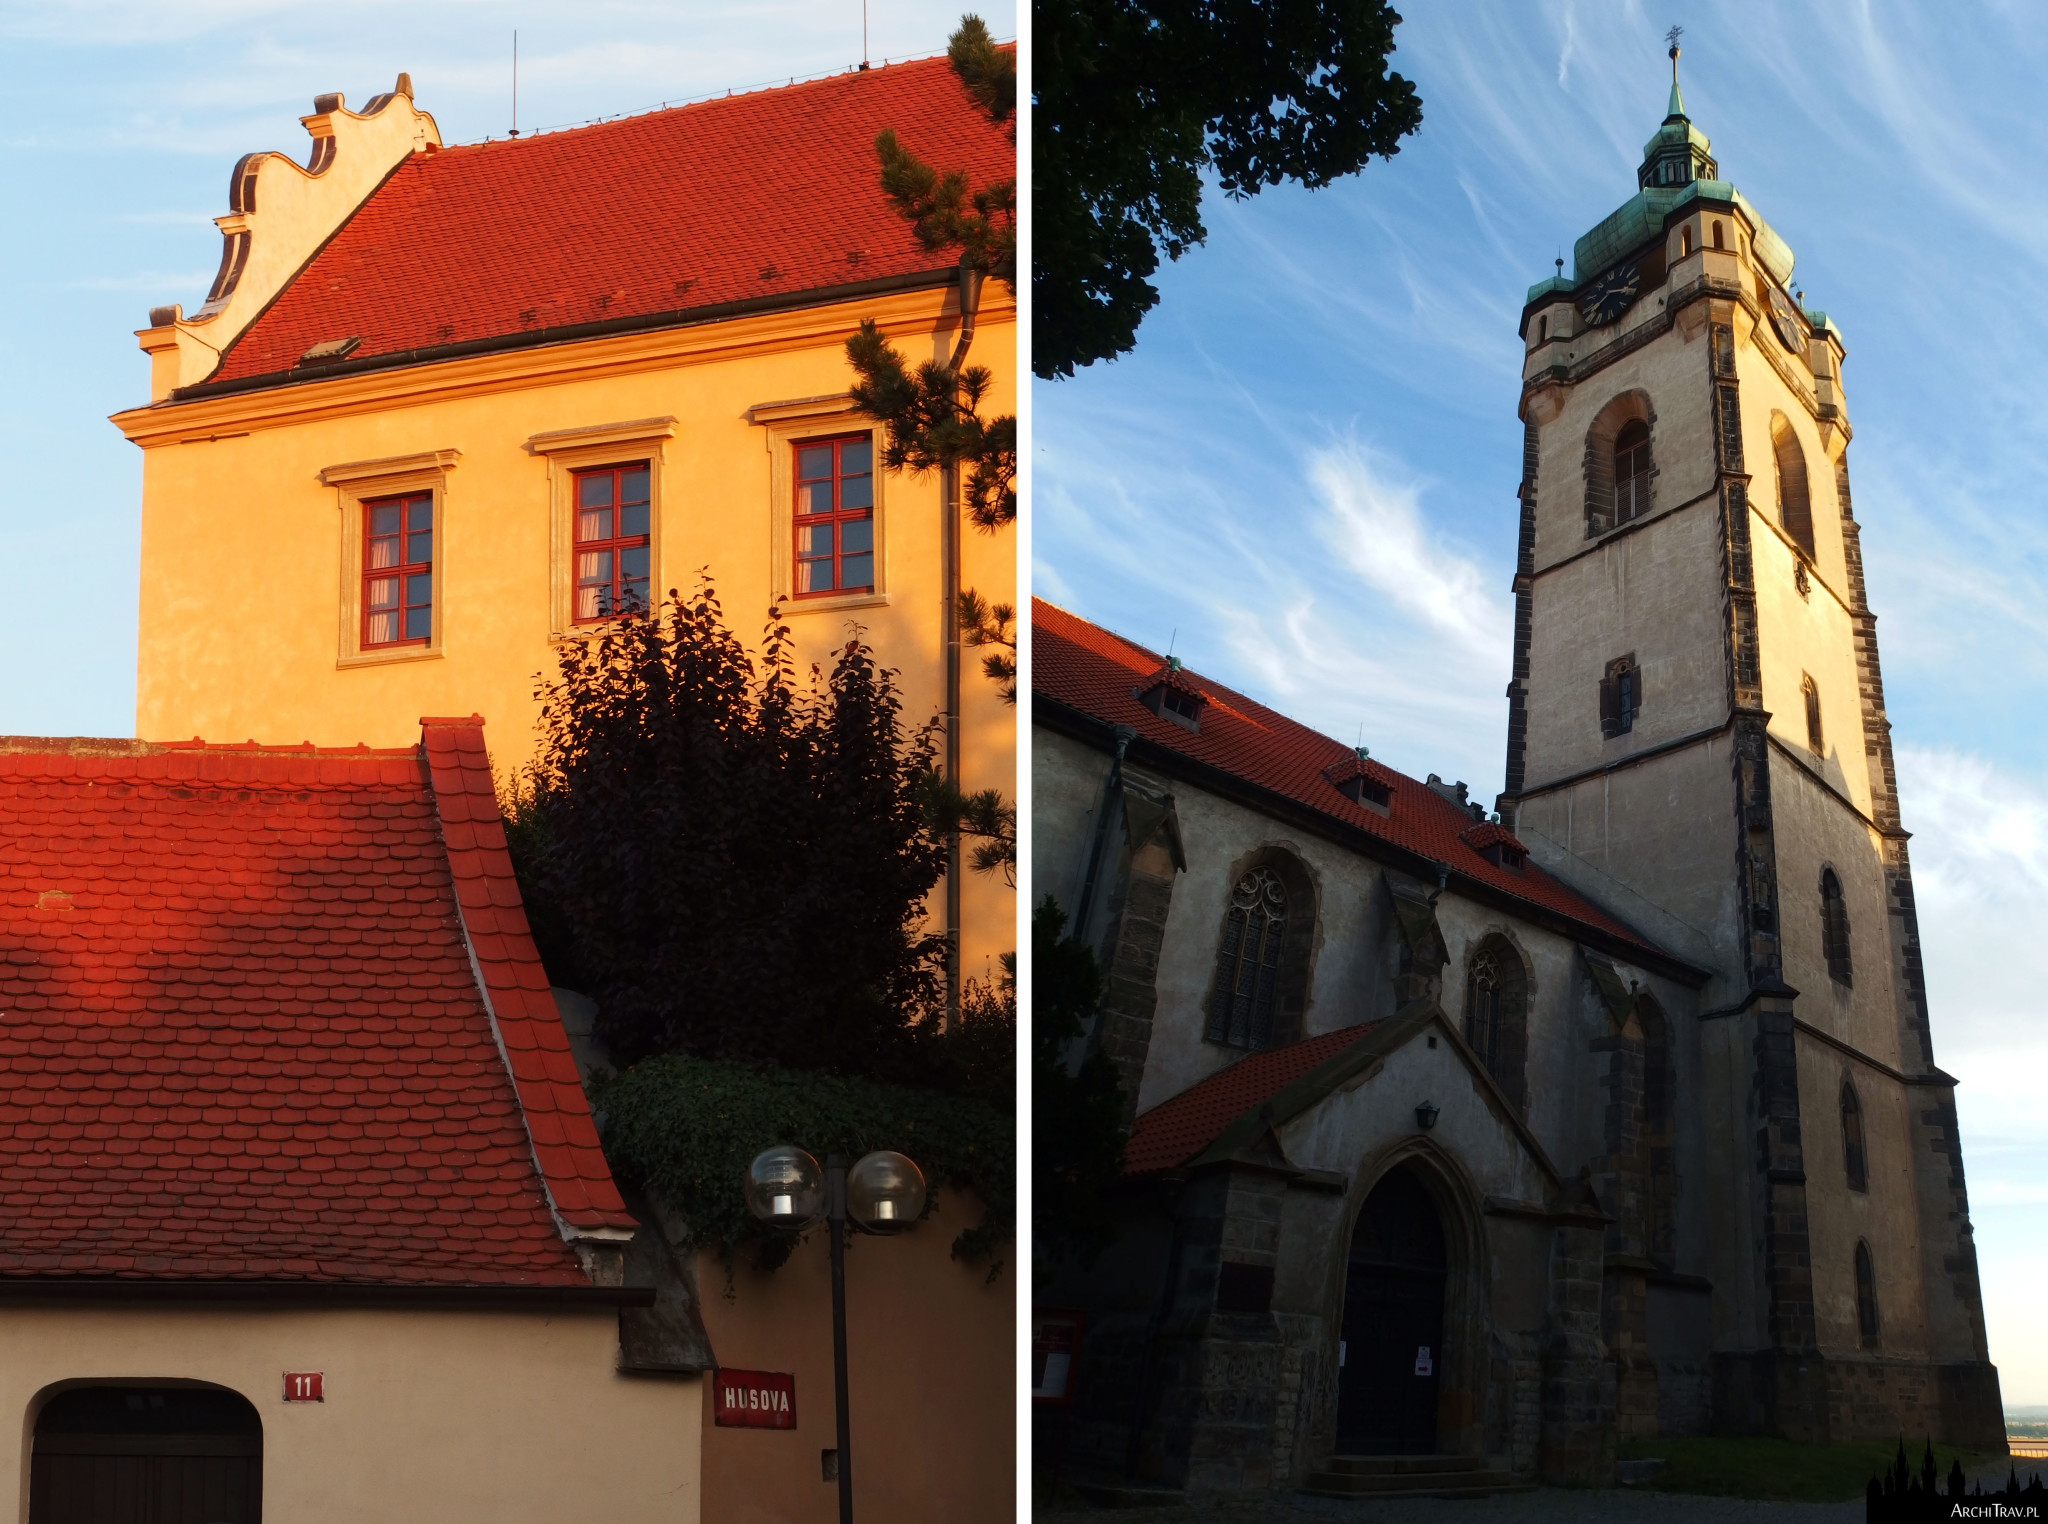 dwa zdjęcia - jedno zbliżenie na część zamku, drugie przedstawia kościół z wysoką wieżą